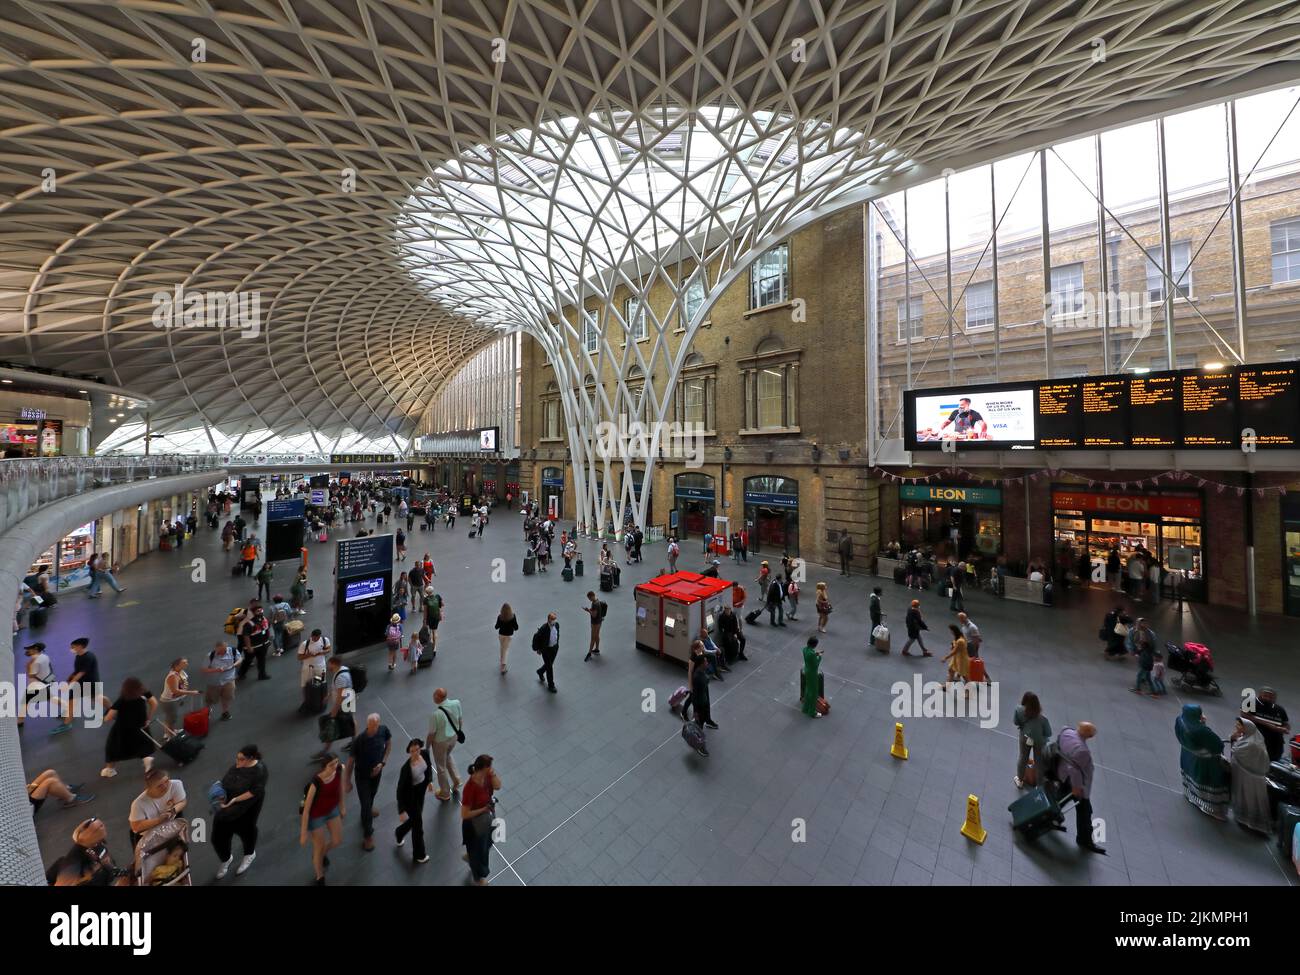 Stazione ferroviaria interna di Kings Cross, atrio con partenze semicircolari, Euston Road, Londra, Inghilterra, REGNO UNITO, N1 9AL Foto Stock